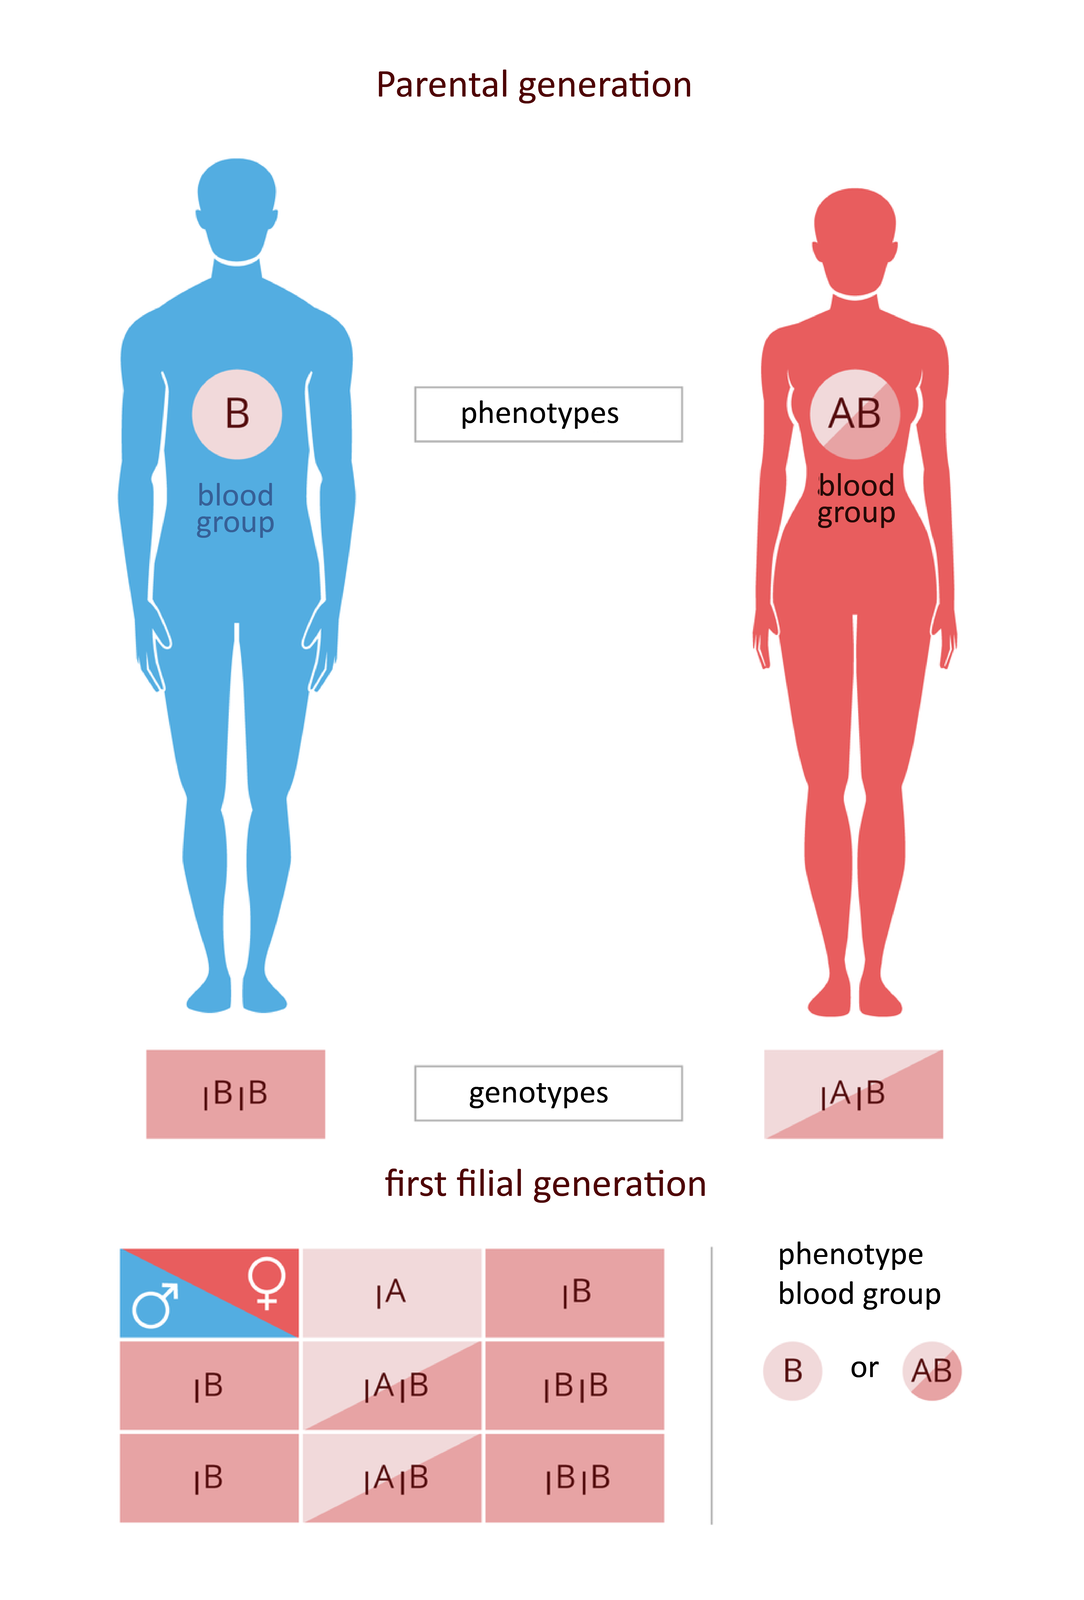 Ilustracja przedstawia pokolenie rodziców. parental generation. Zestawiono niebieską sylwetkę mężczyzny z grupą krwi, blood group B i różową sylwetkę kobiety z grupą krwi, blood group AB. Pod sylwetkami wypisane genotypy, genotypes: mężczyzna jest homozygotą. Poniżej na różowym tle krzyżówka genetyczna. W pokoleniu potomnym połowa dzieci ma krew grupy AB, połowa grupy B. Na ilustracji są napisy: pokolenie rodzicielskie; grupa krwi; fenotypy; genotypy; pierwsze pokolenia potomne